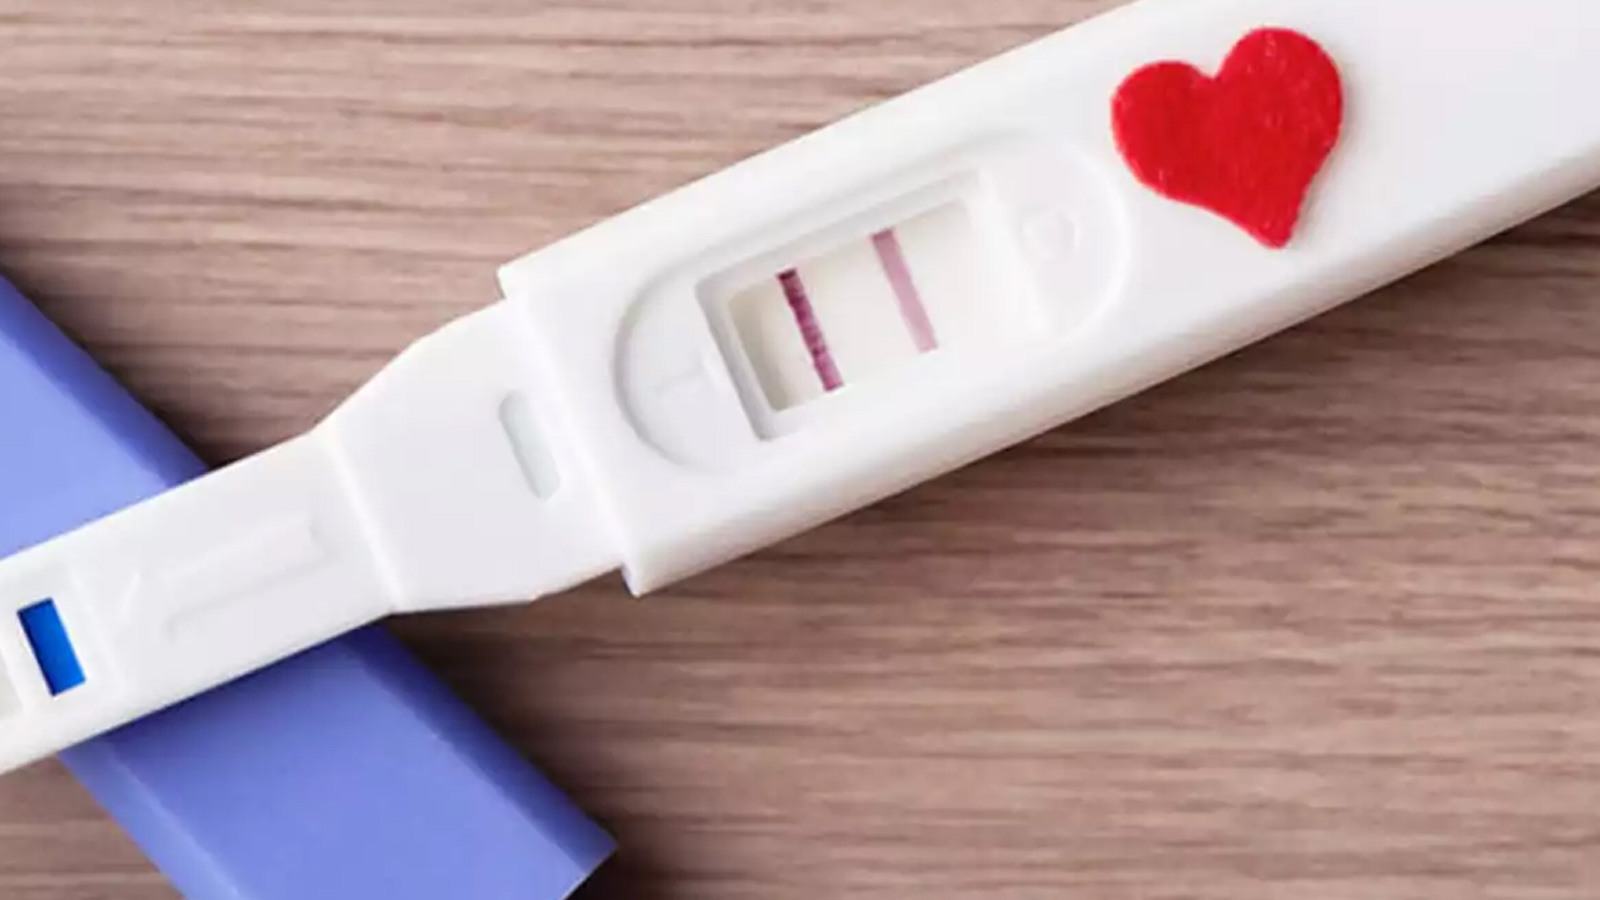 Evde gebelik testi nasıl yapılır? 1 haftalık gebelik idrar testinde çıkar mı?